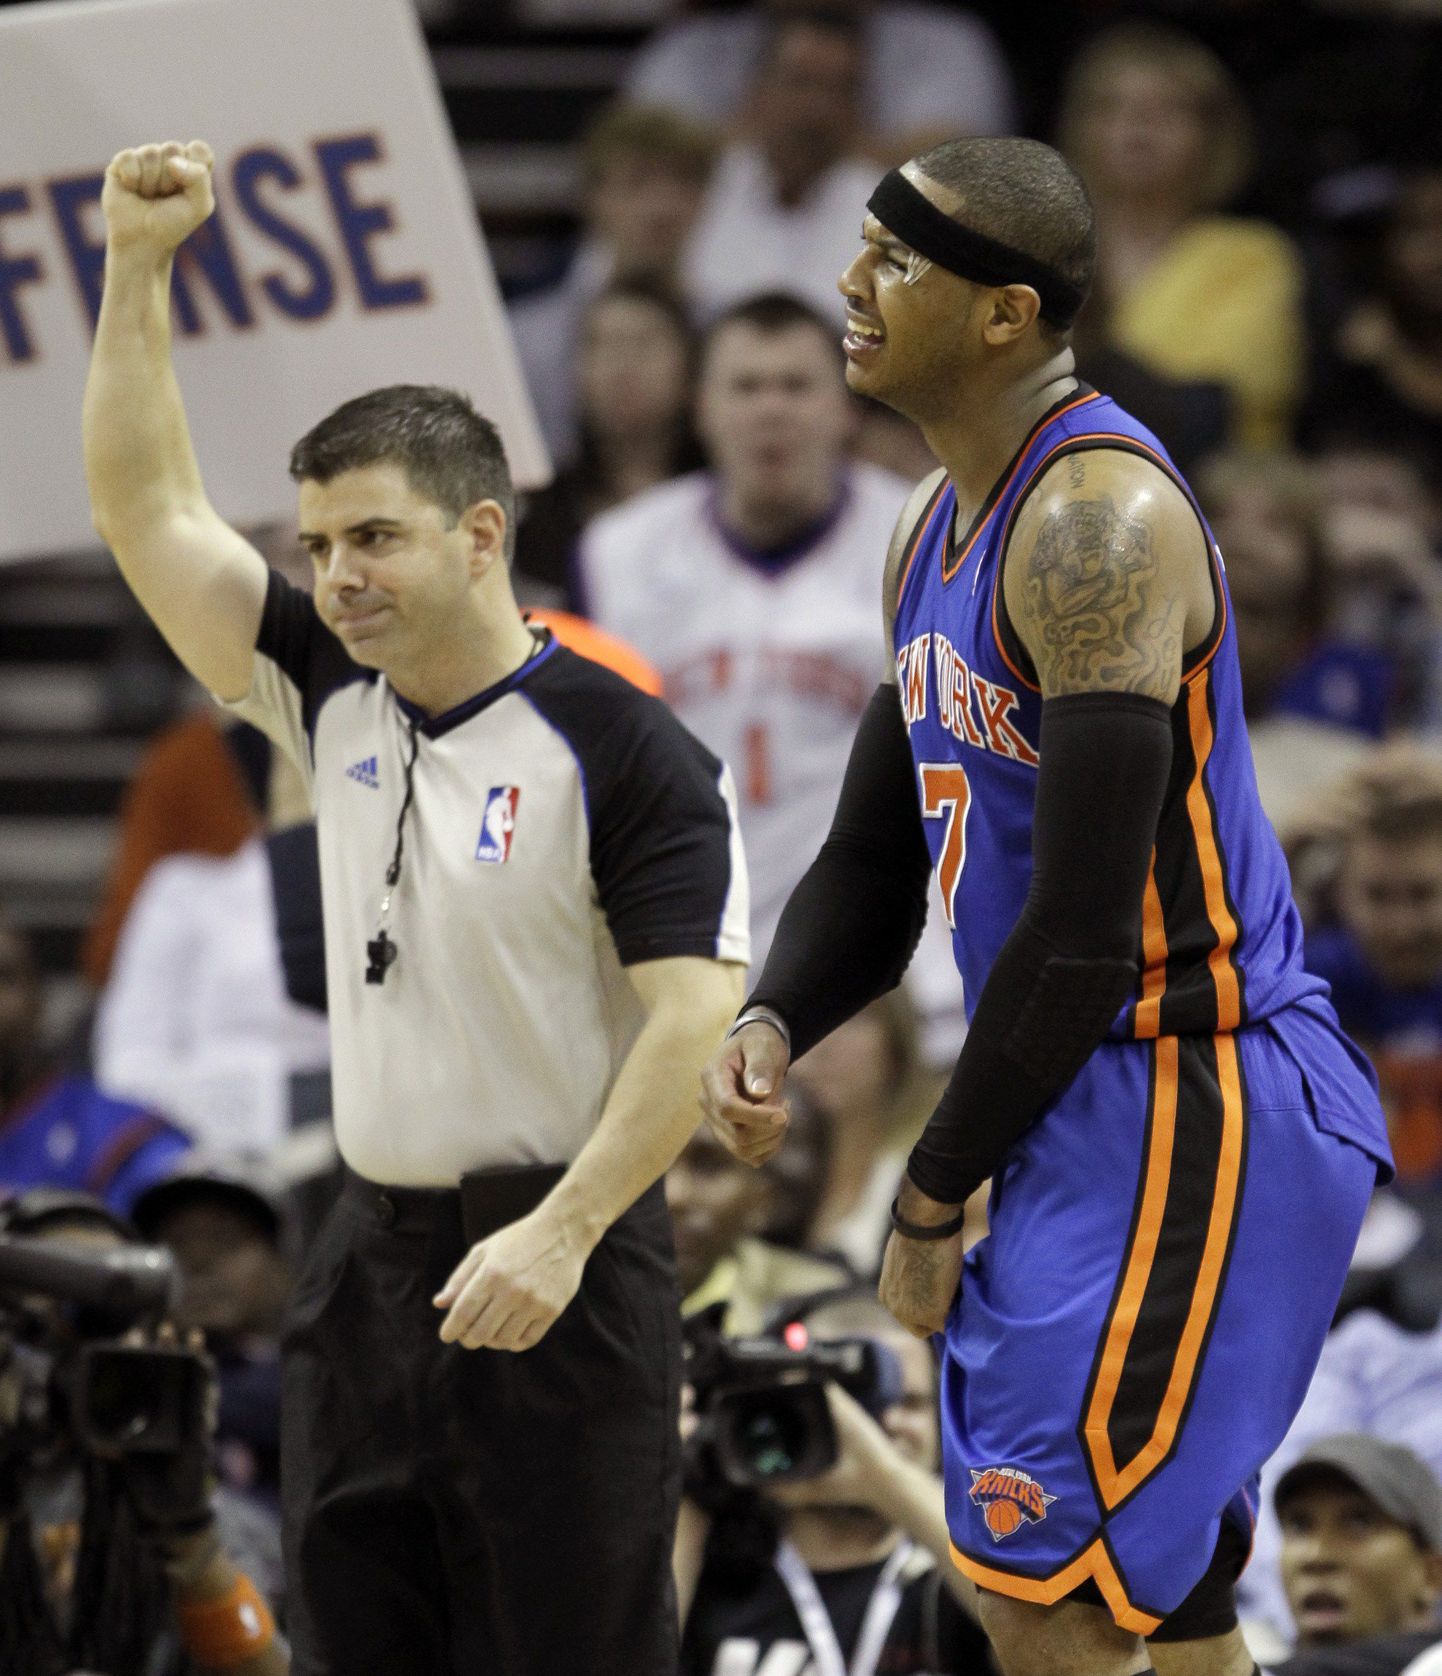 New York Knicks ei ole Carmelo Anthony (paremal) vedamisel õiget hoogu leidnud.